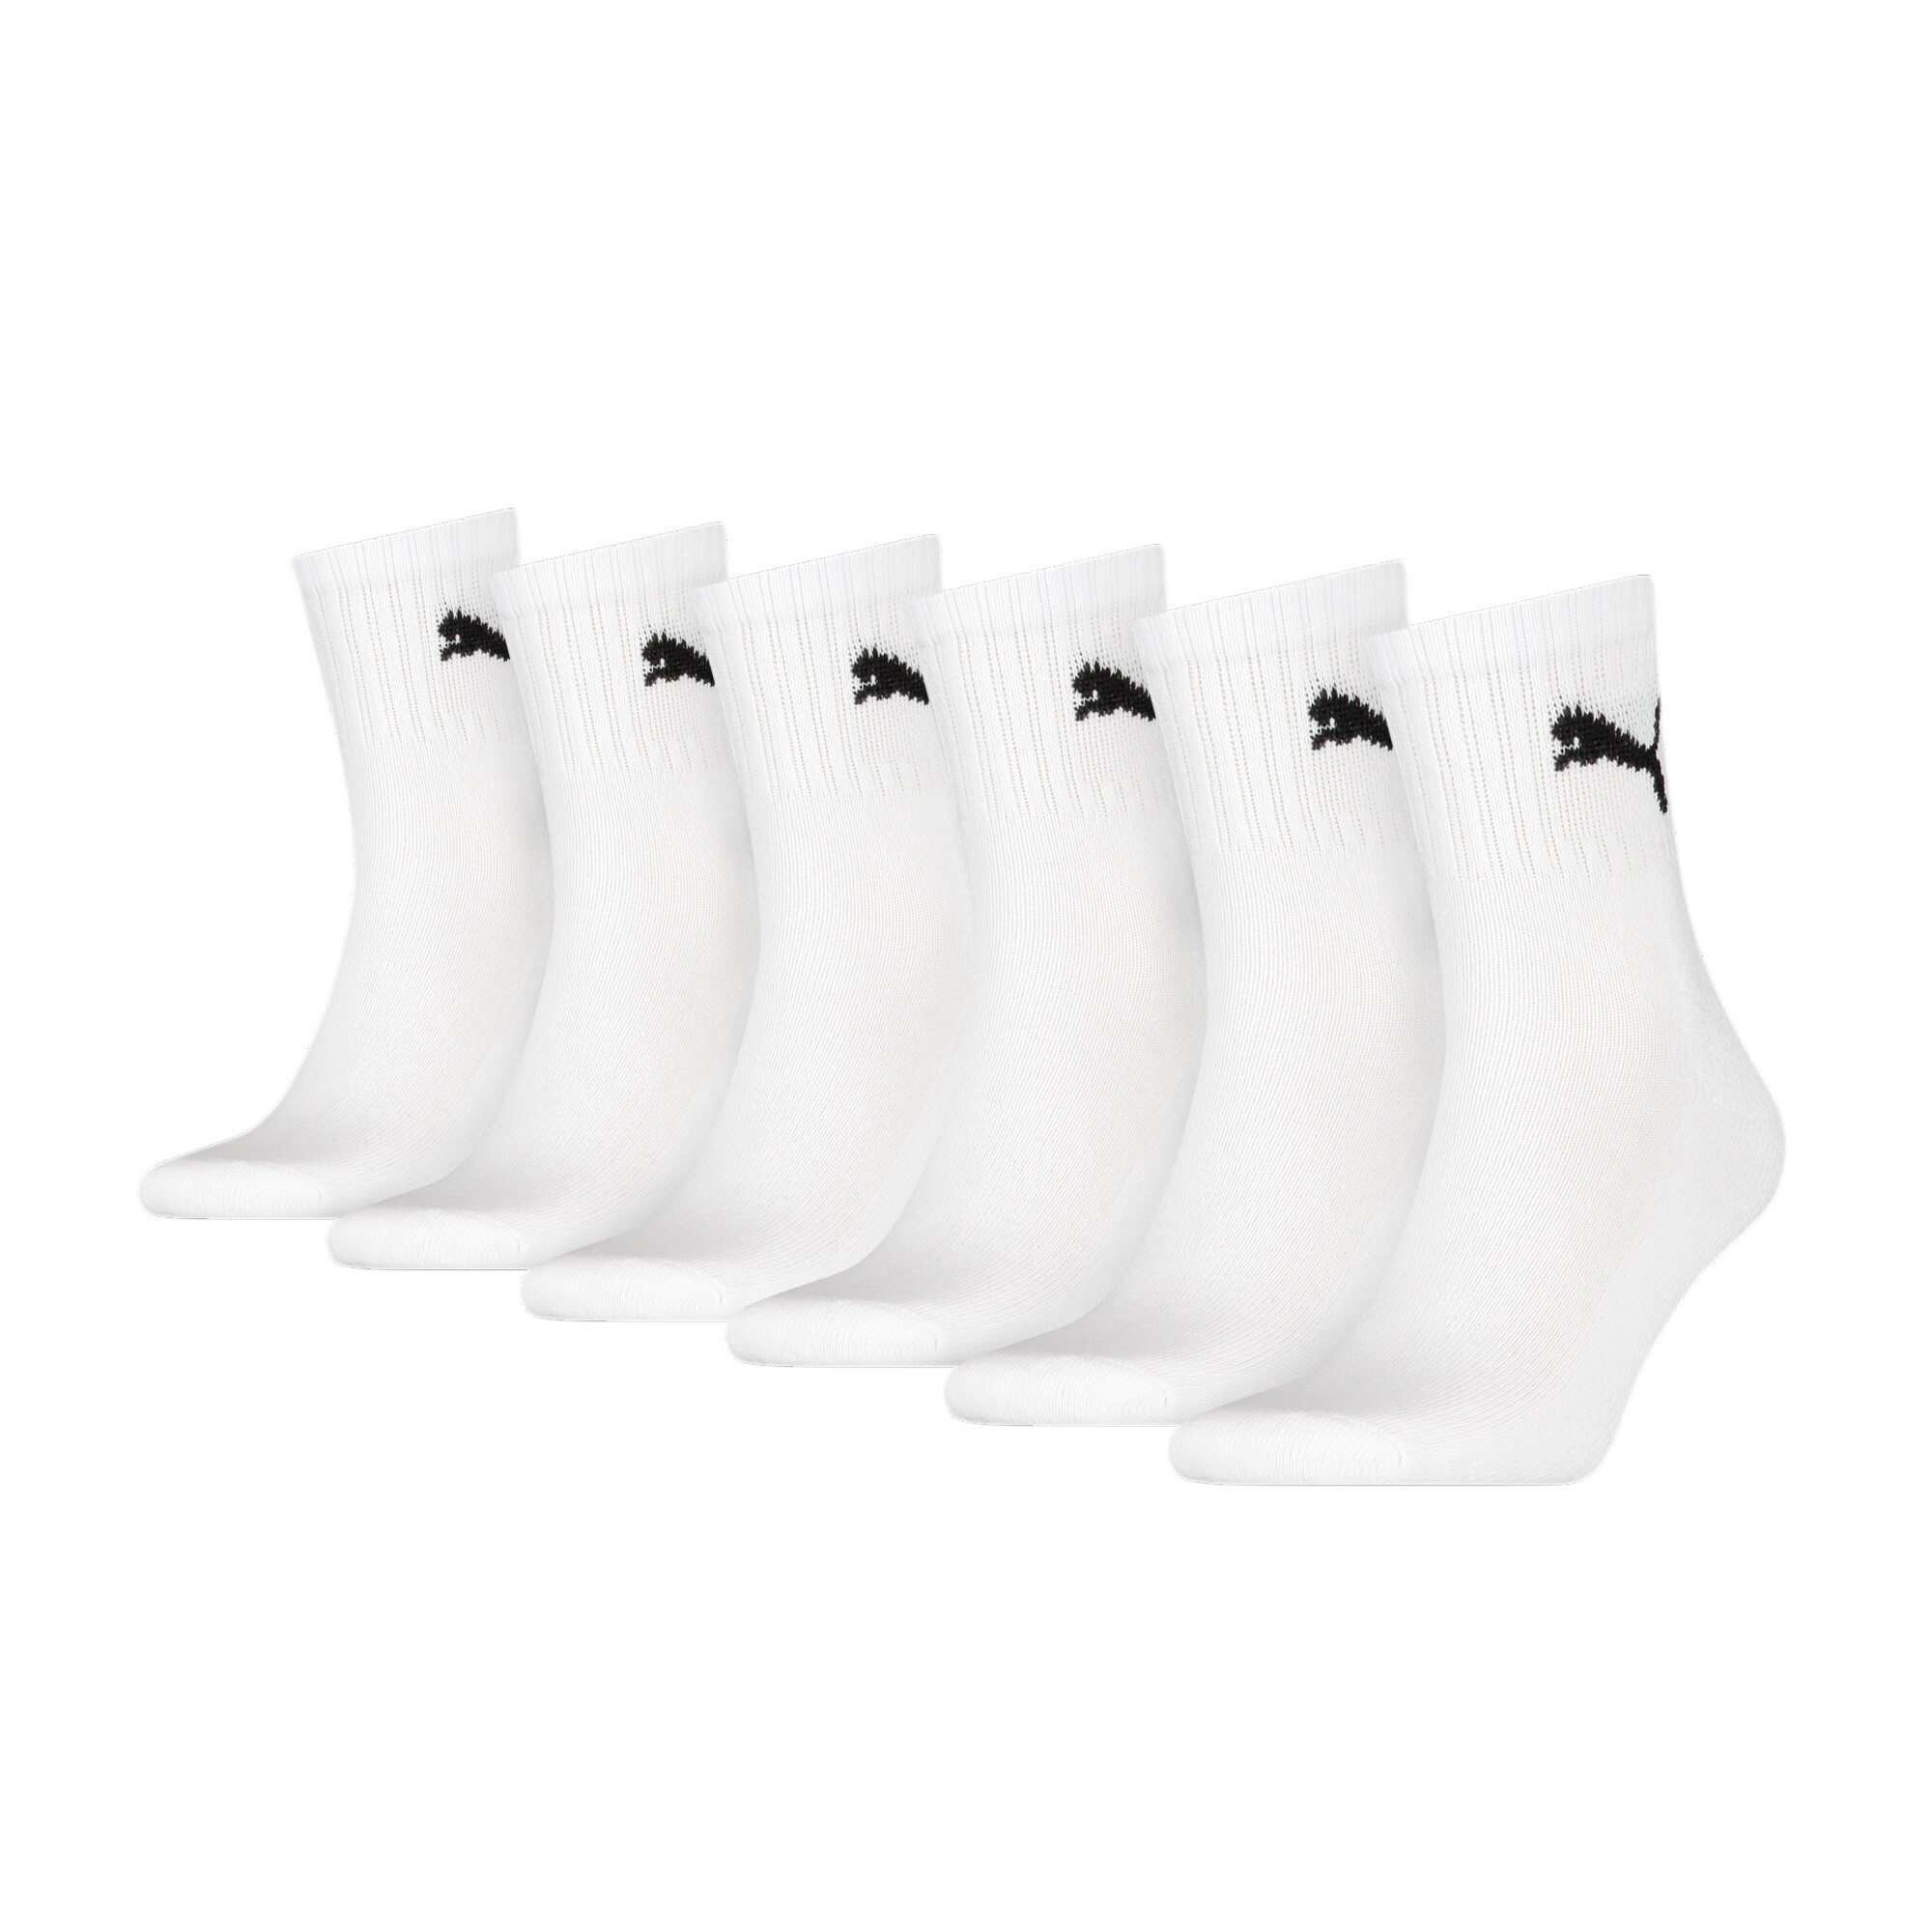 Puma Unisex Short Crew Shirt Socks 6 Pack, White, Size 39-42, Clothing